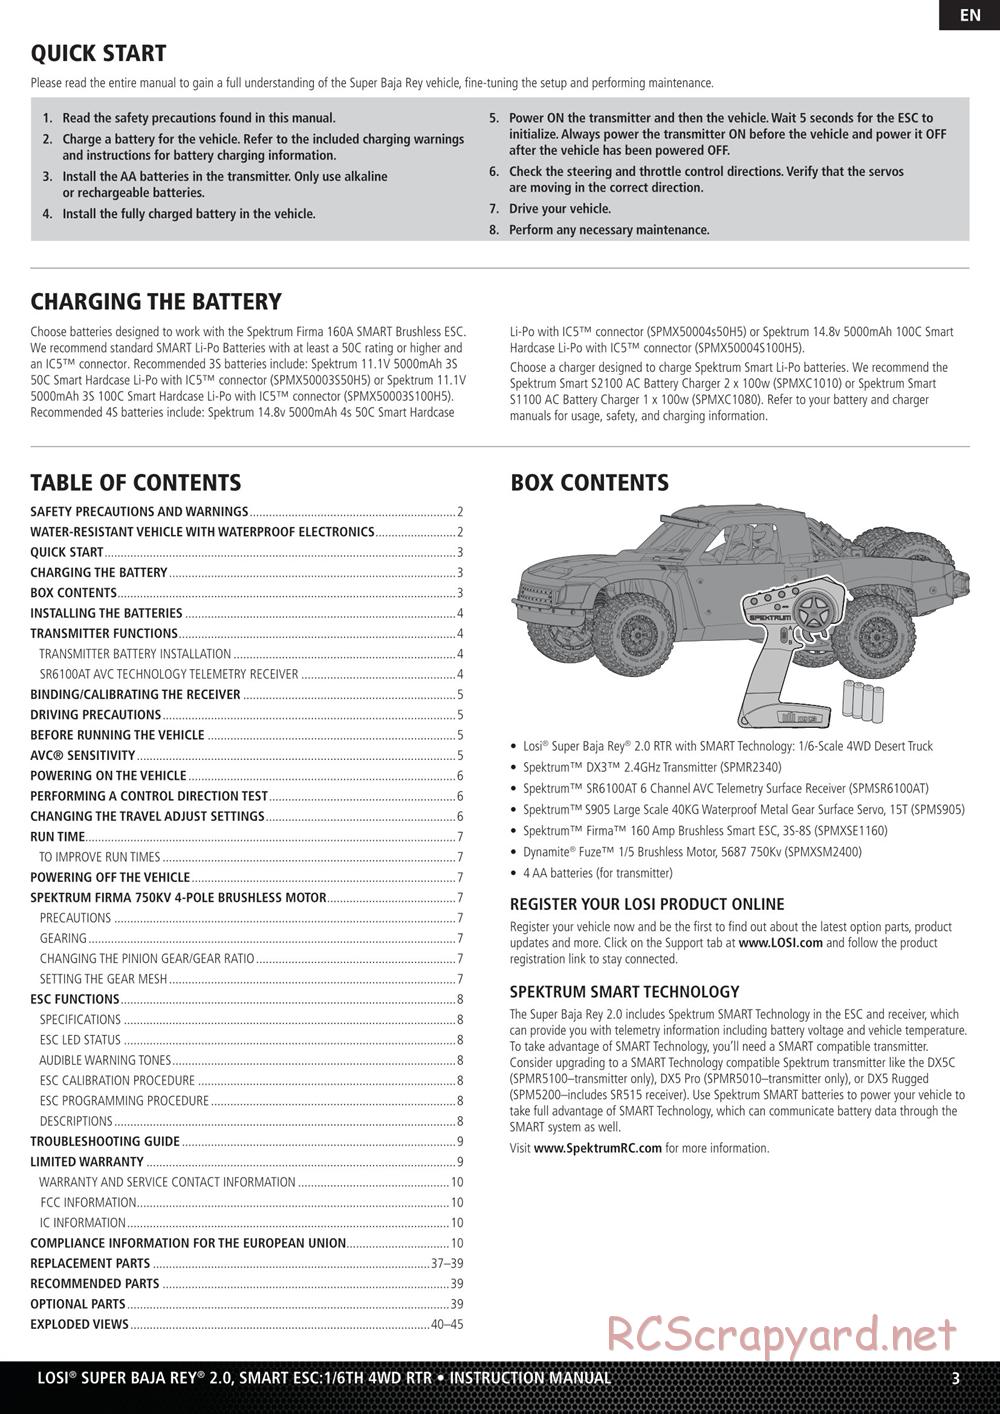 Team Losi - Super Baja Rey 2.0 Desert Truck - Manual - Page 3